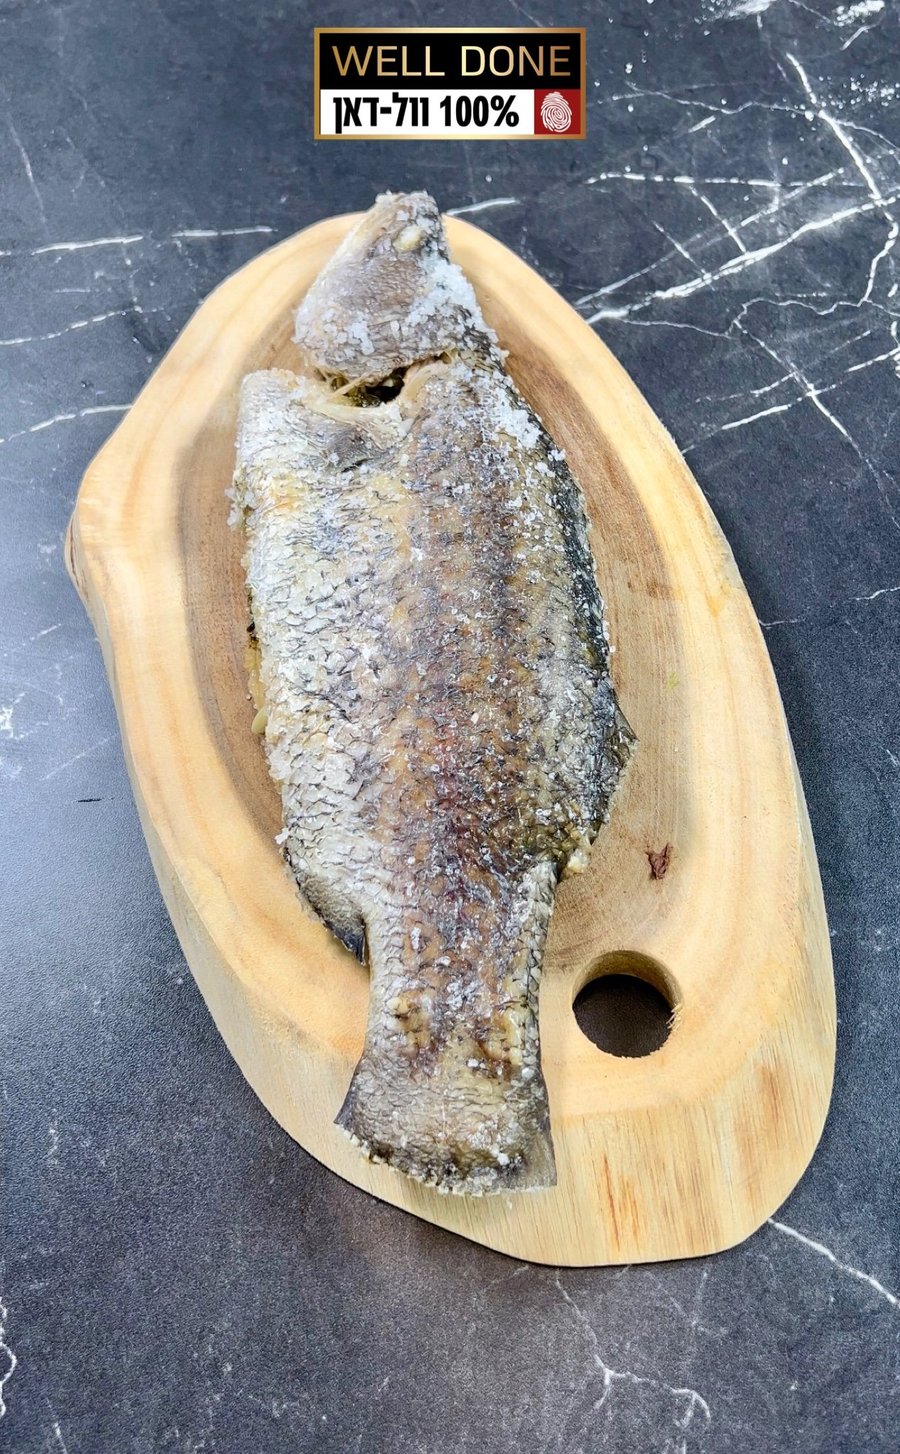 מתכון לדג במלח - טכניקה לדג עסיסי וטעים במיוחד